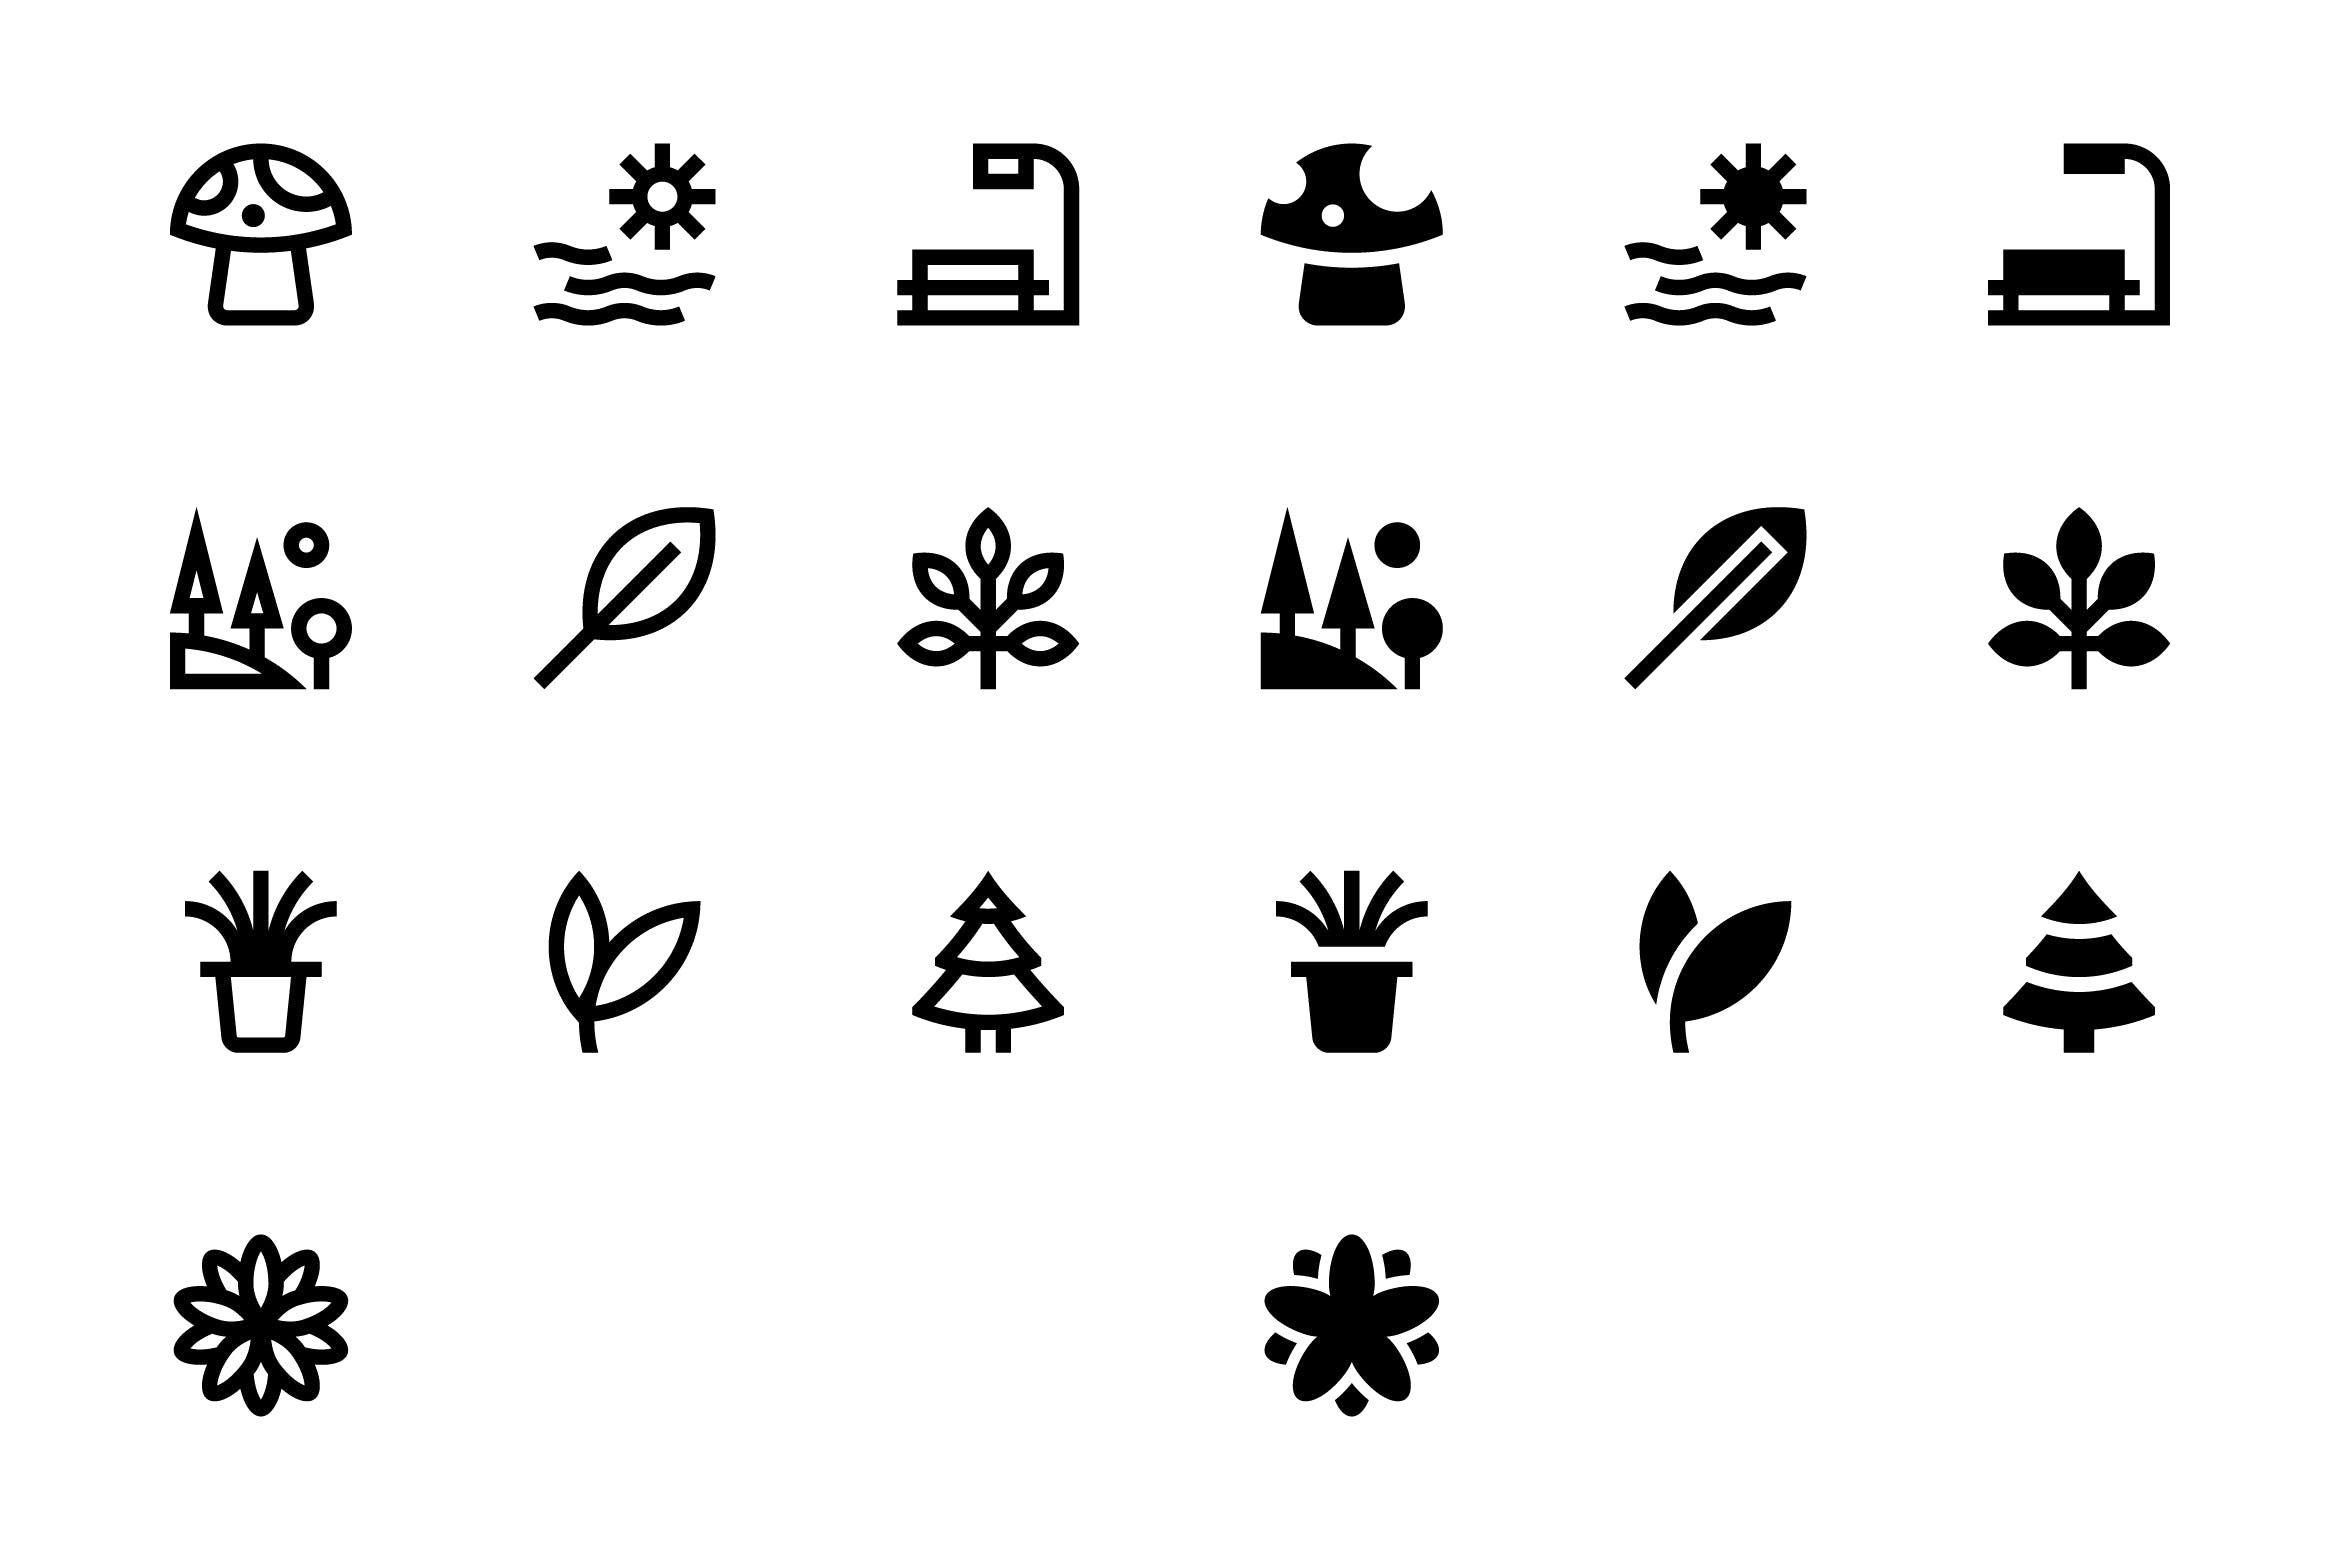 20枚自然主题SVG矢量蚂蚁素材精选图标#3 20 Nature Icons #3插图